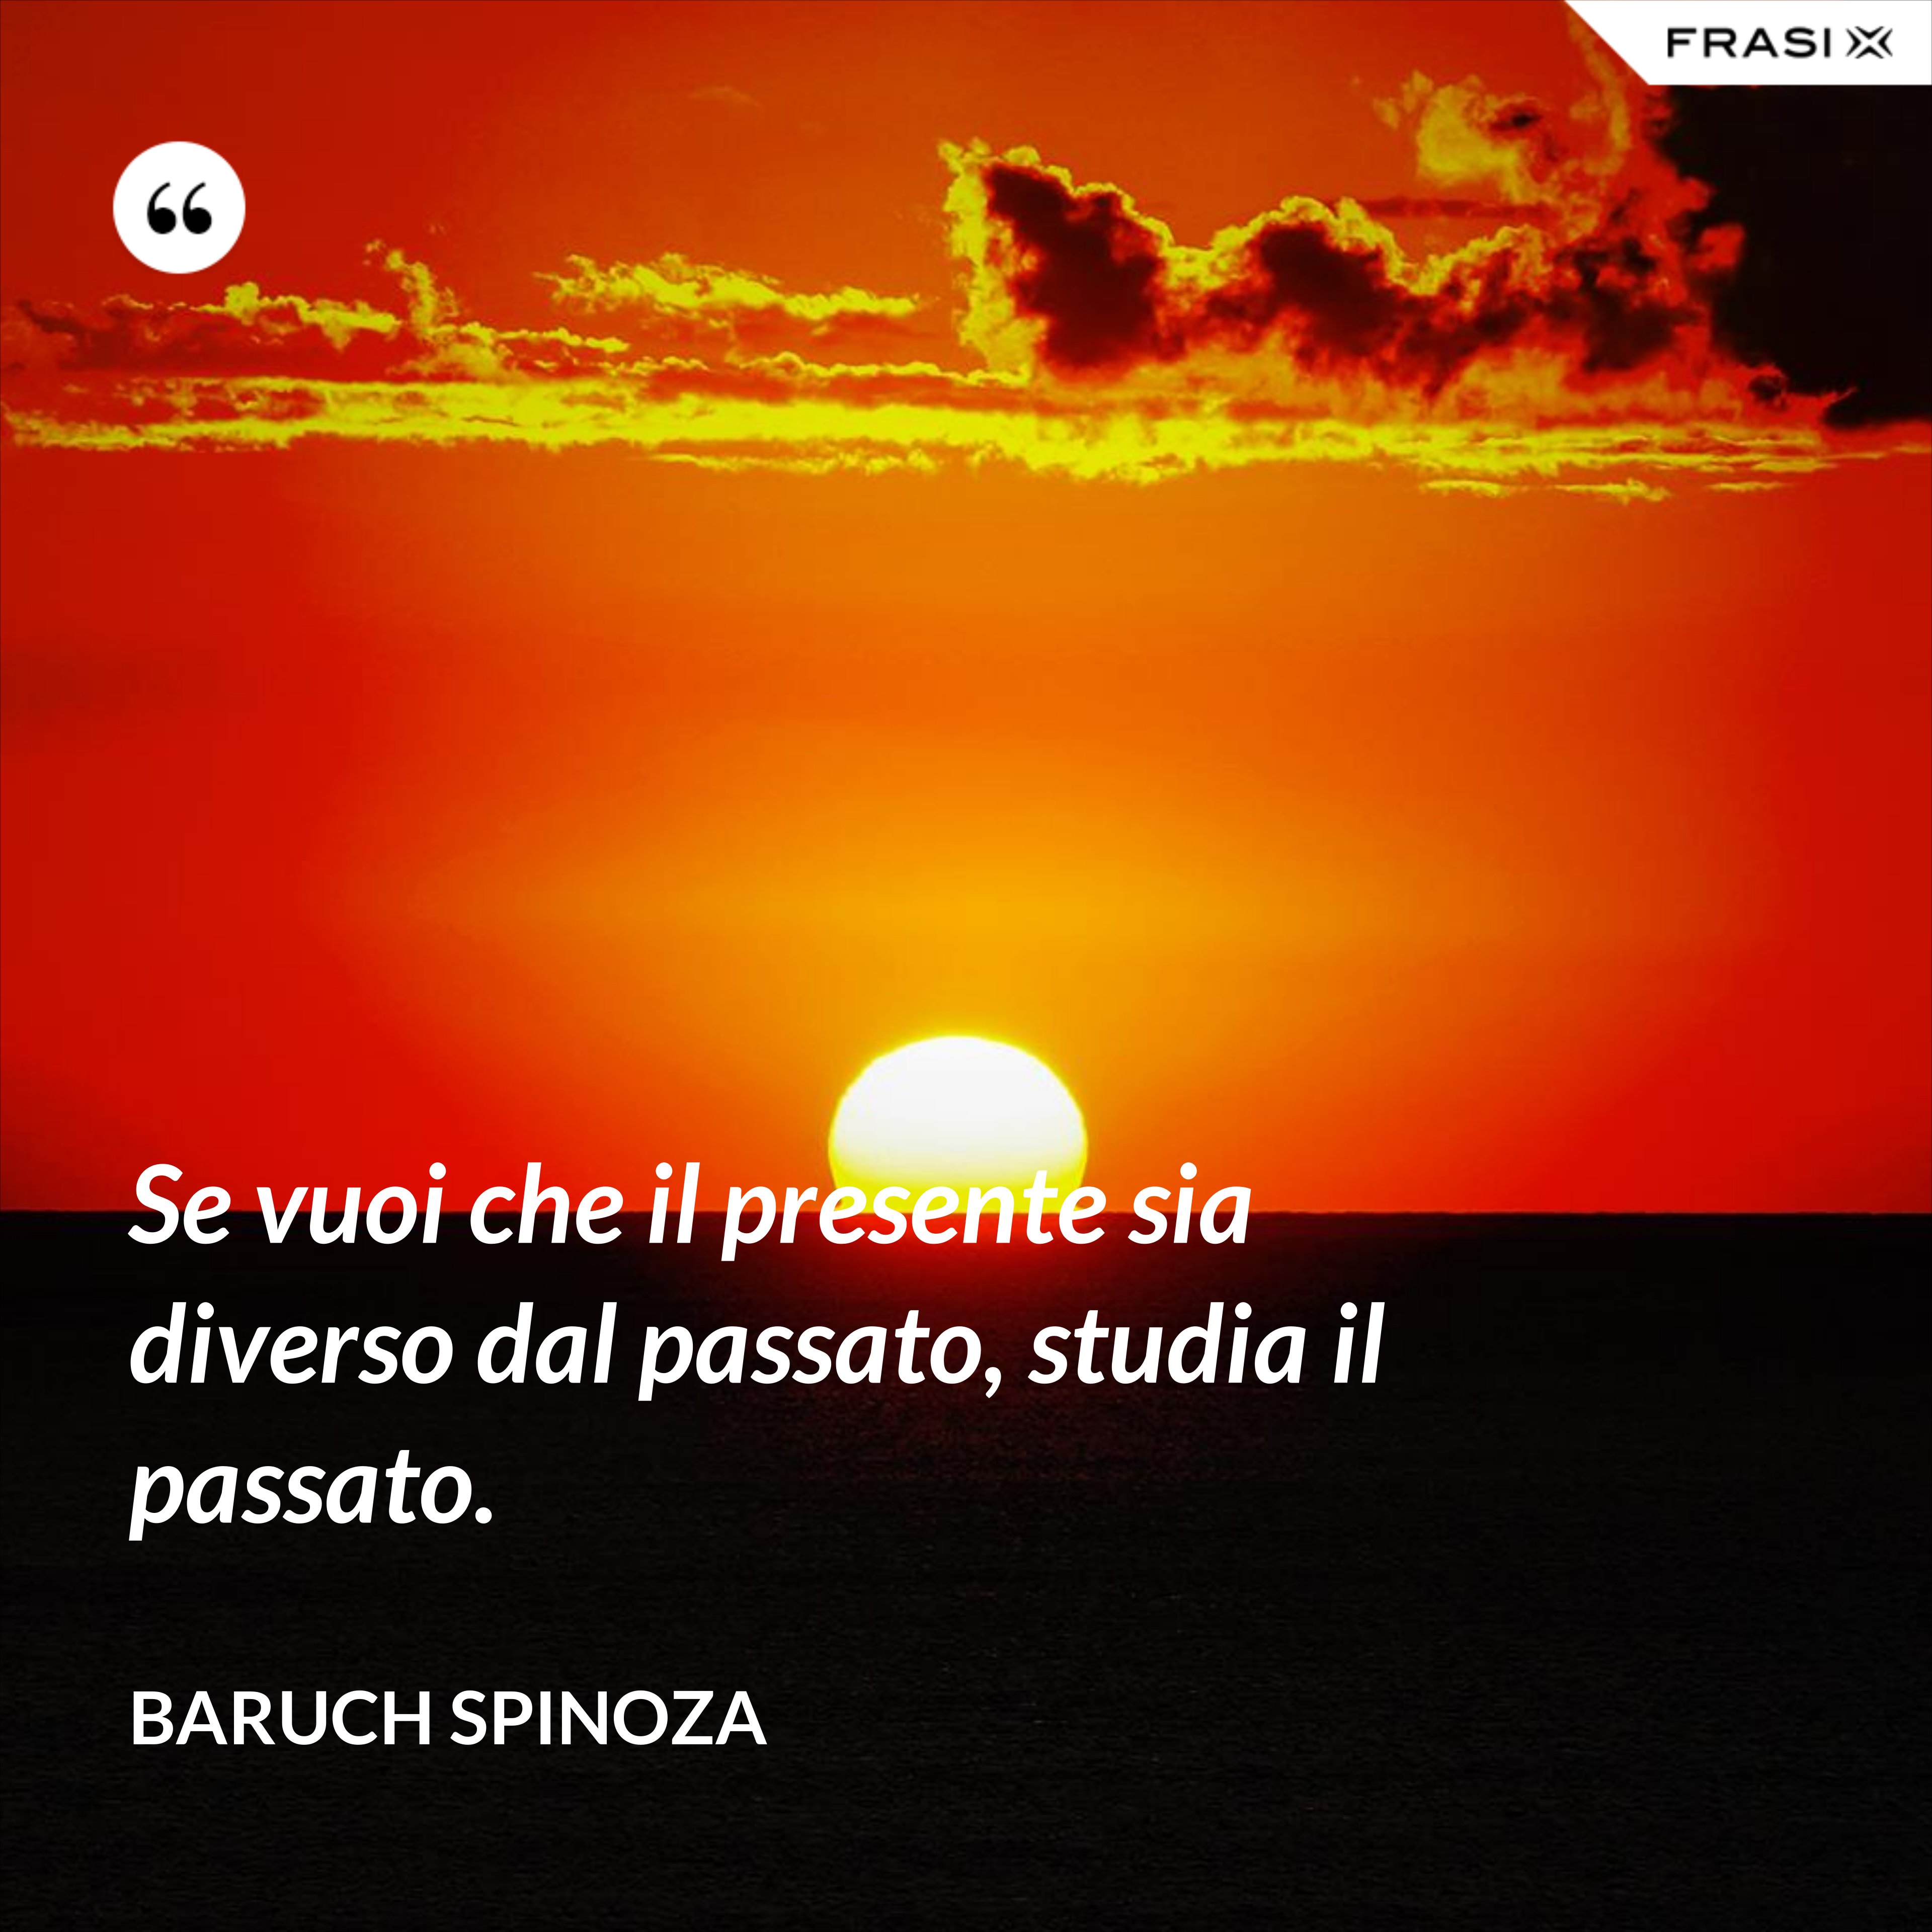 Se vuoi che il presente sia diverso dal passato, studia il passato. - Baruch Spinoza